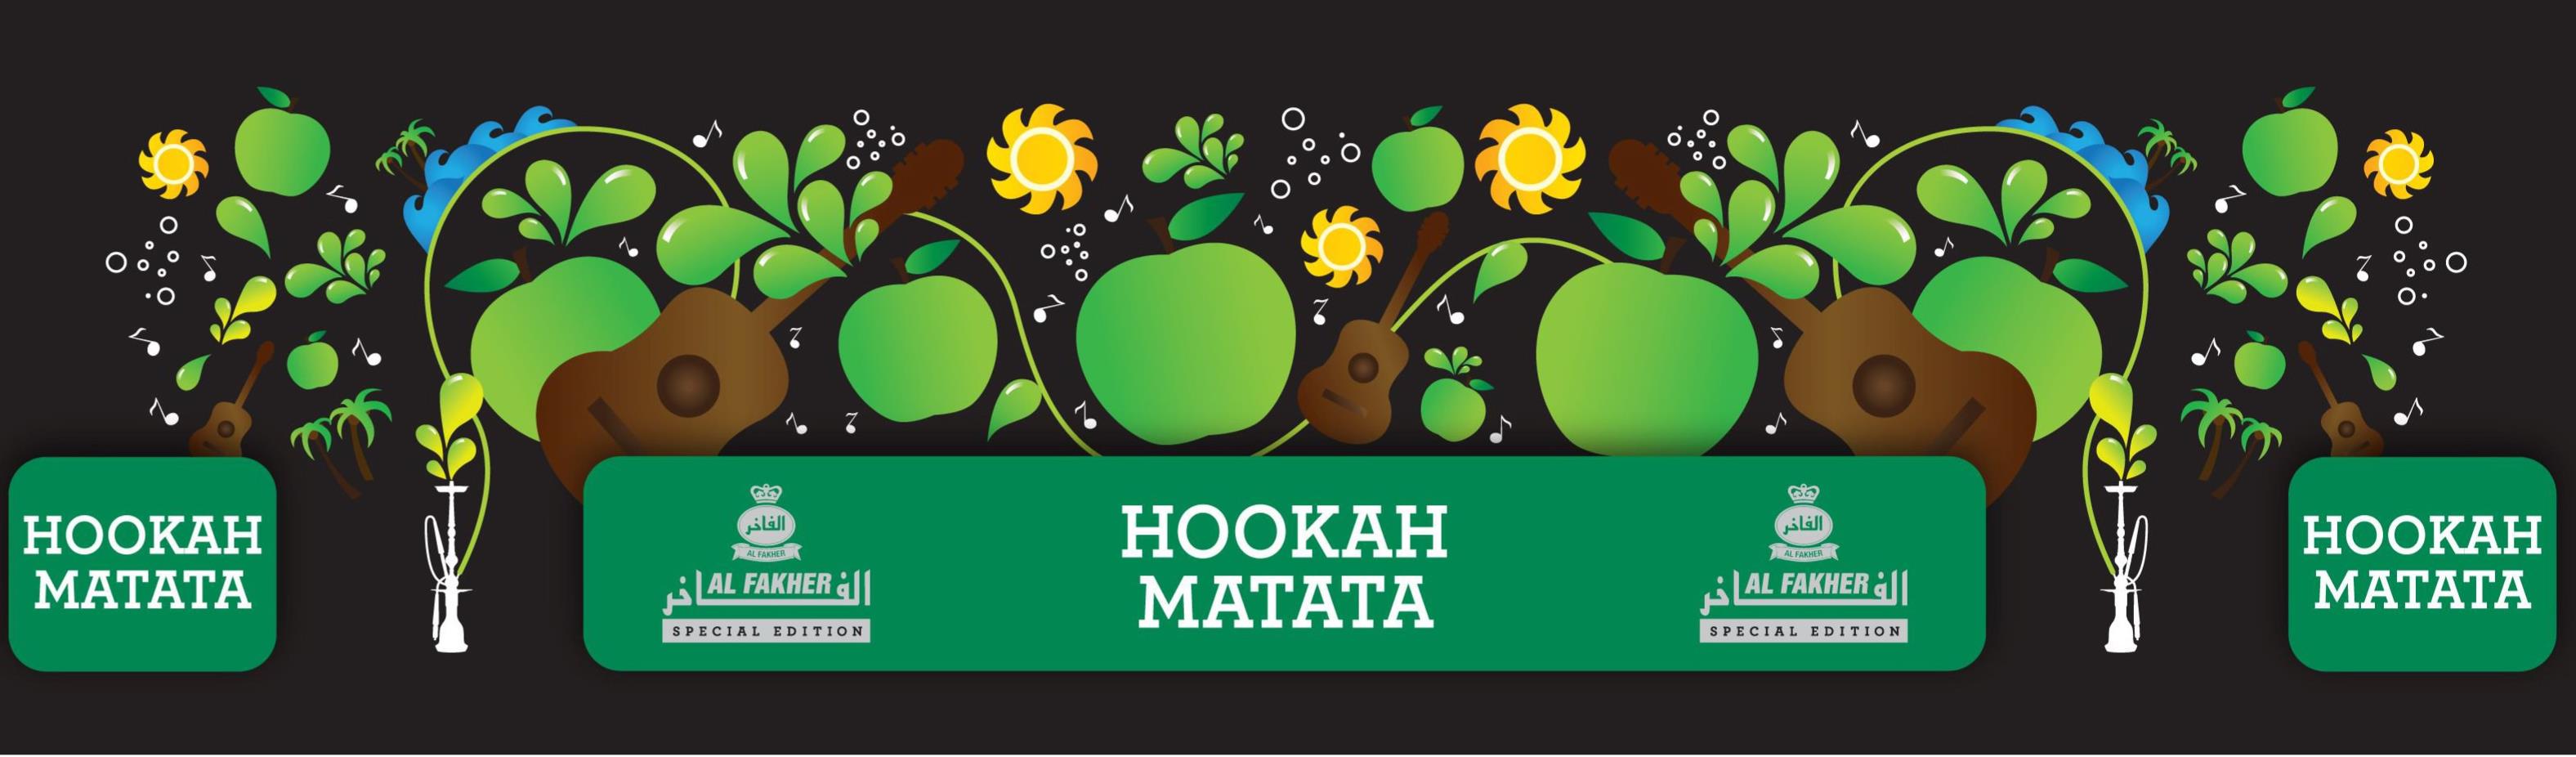  HOOKAH MATATA AL FAKHER SPECIAL EDITION